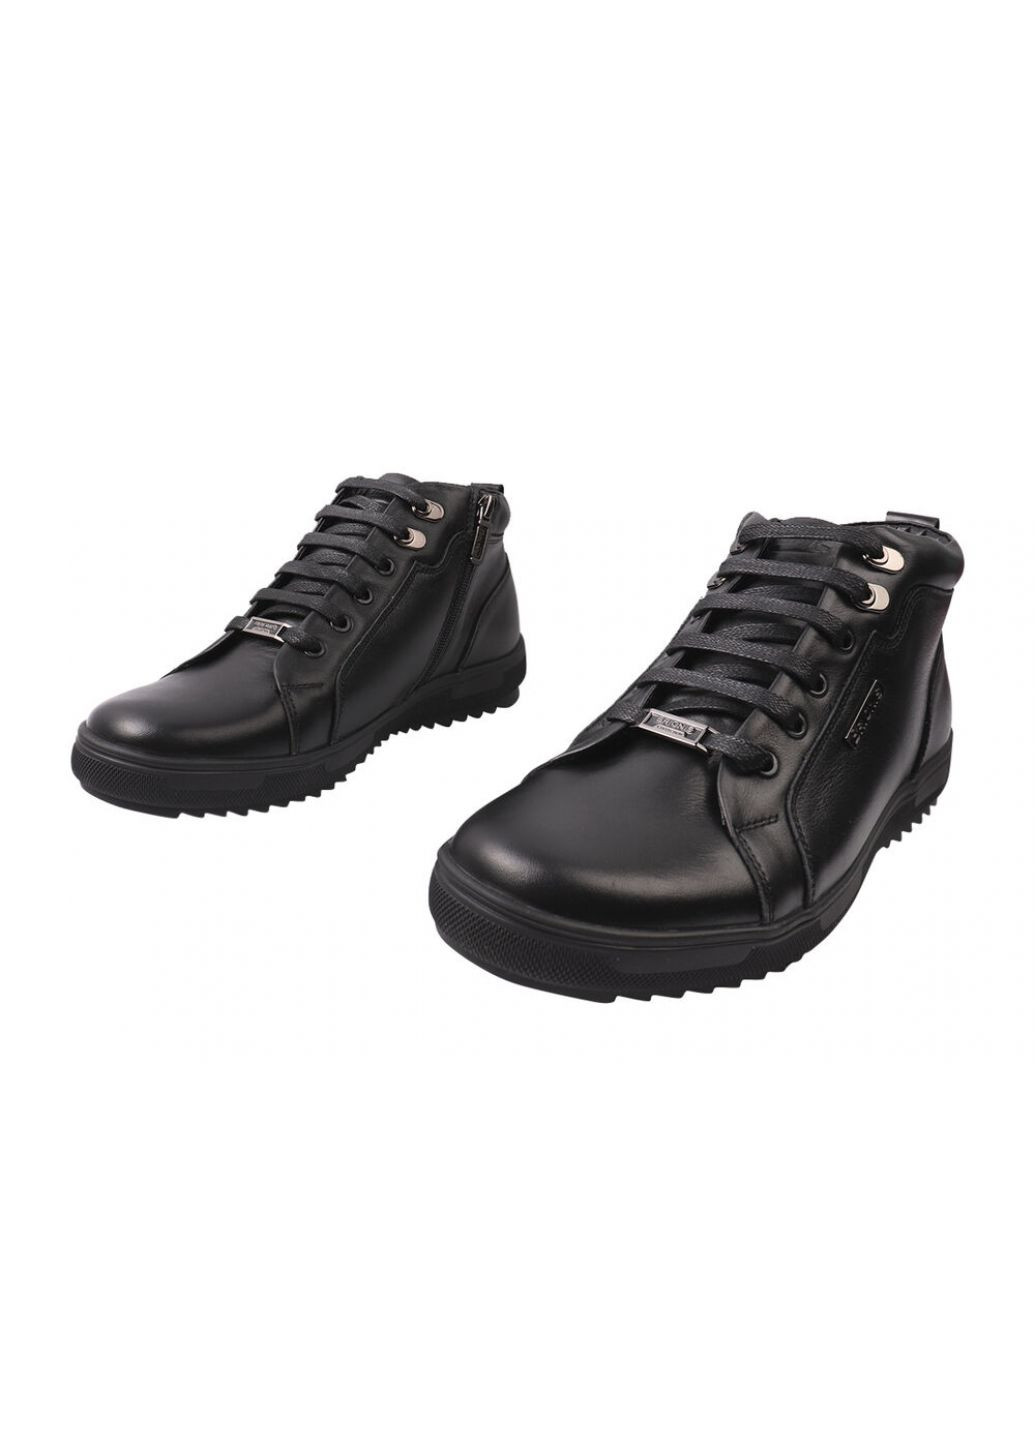 Черные ботинки мужские из натуральной кожи, на низком ходу, на шнуровке, черные, украина Brionis